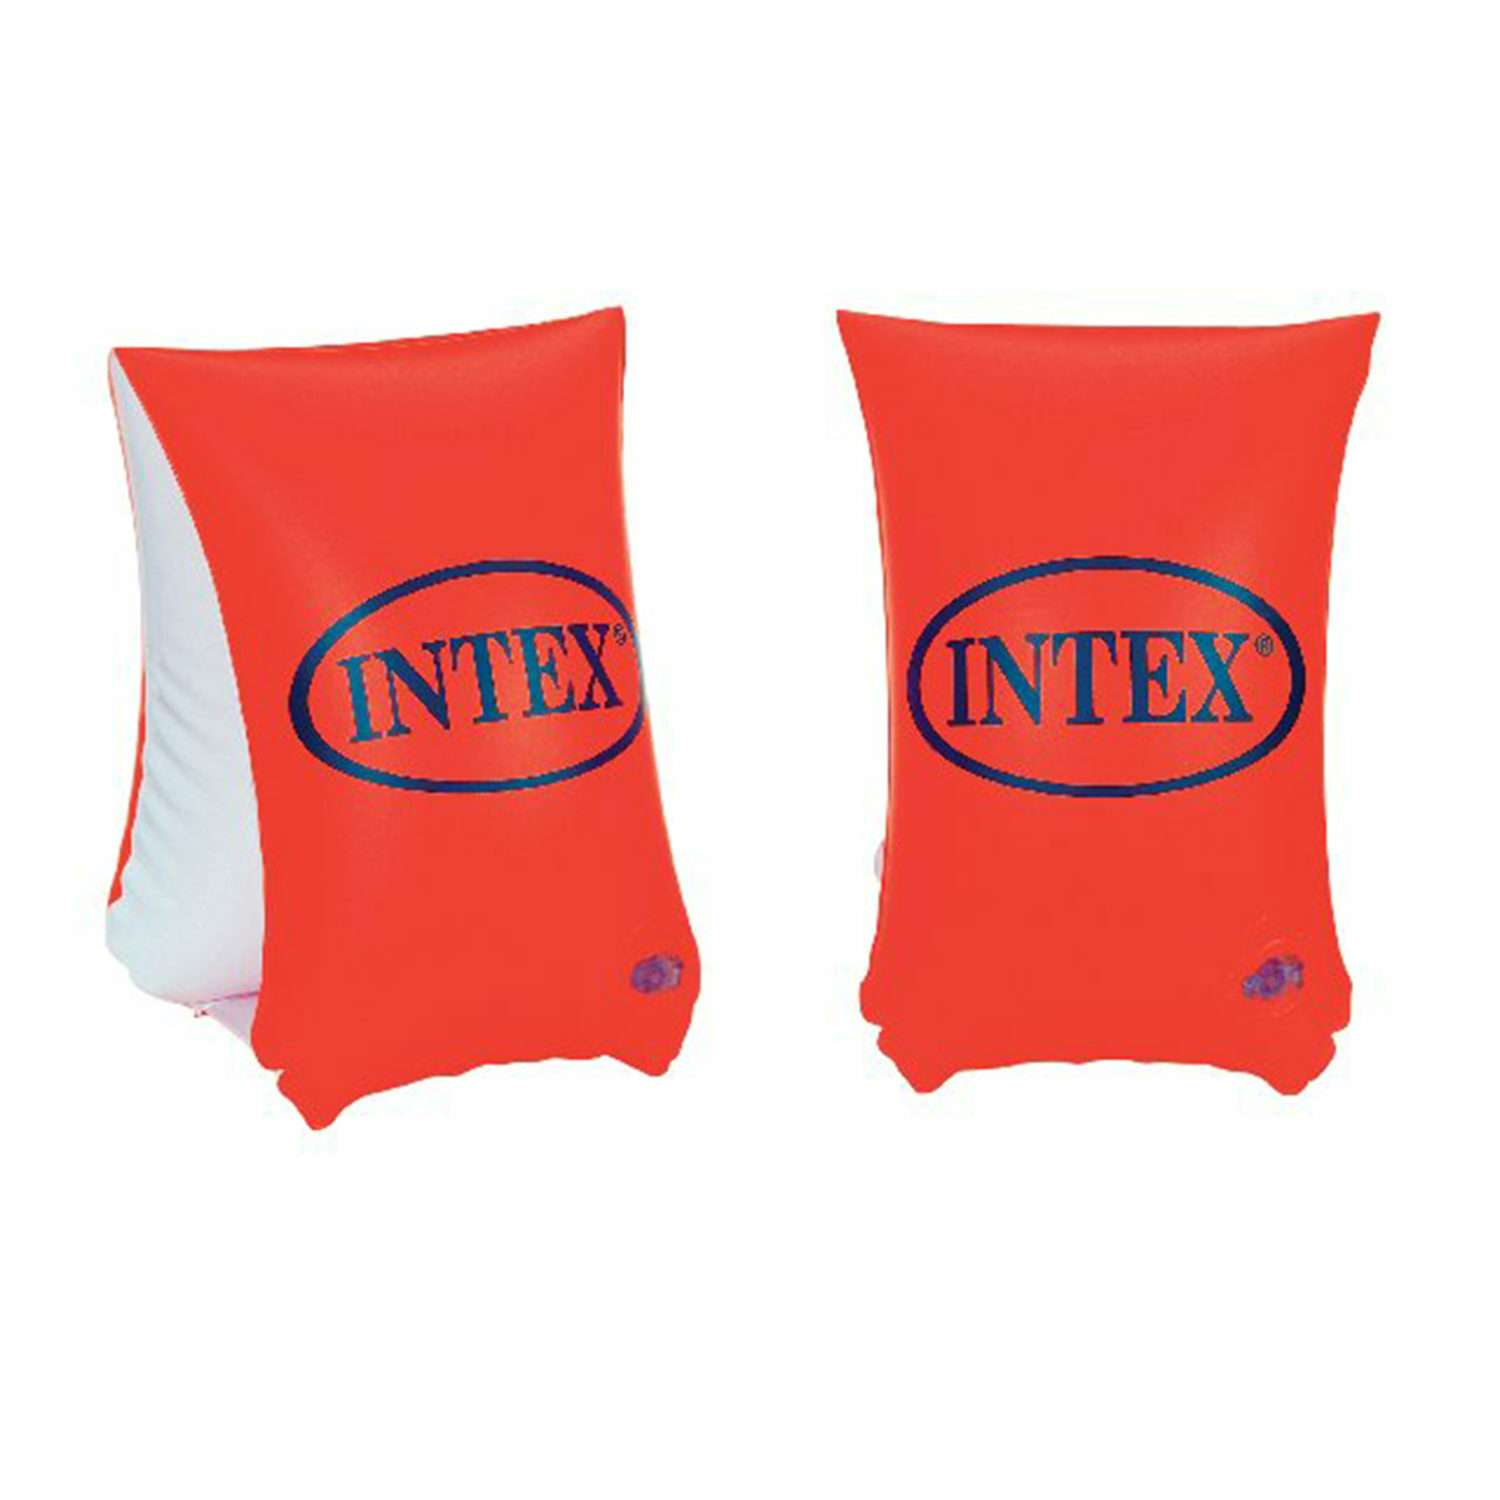 Надувные нарукавники INTEX большие делюкс 6-12 лет - фото 1